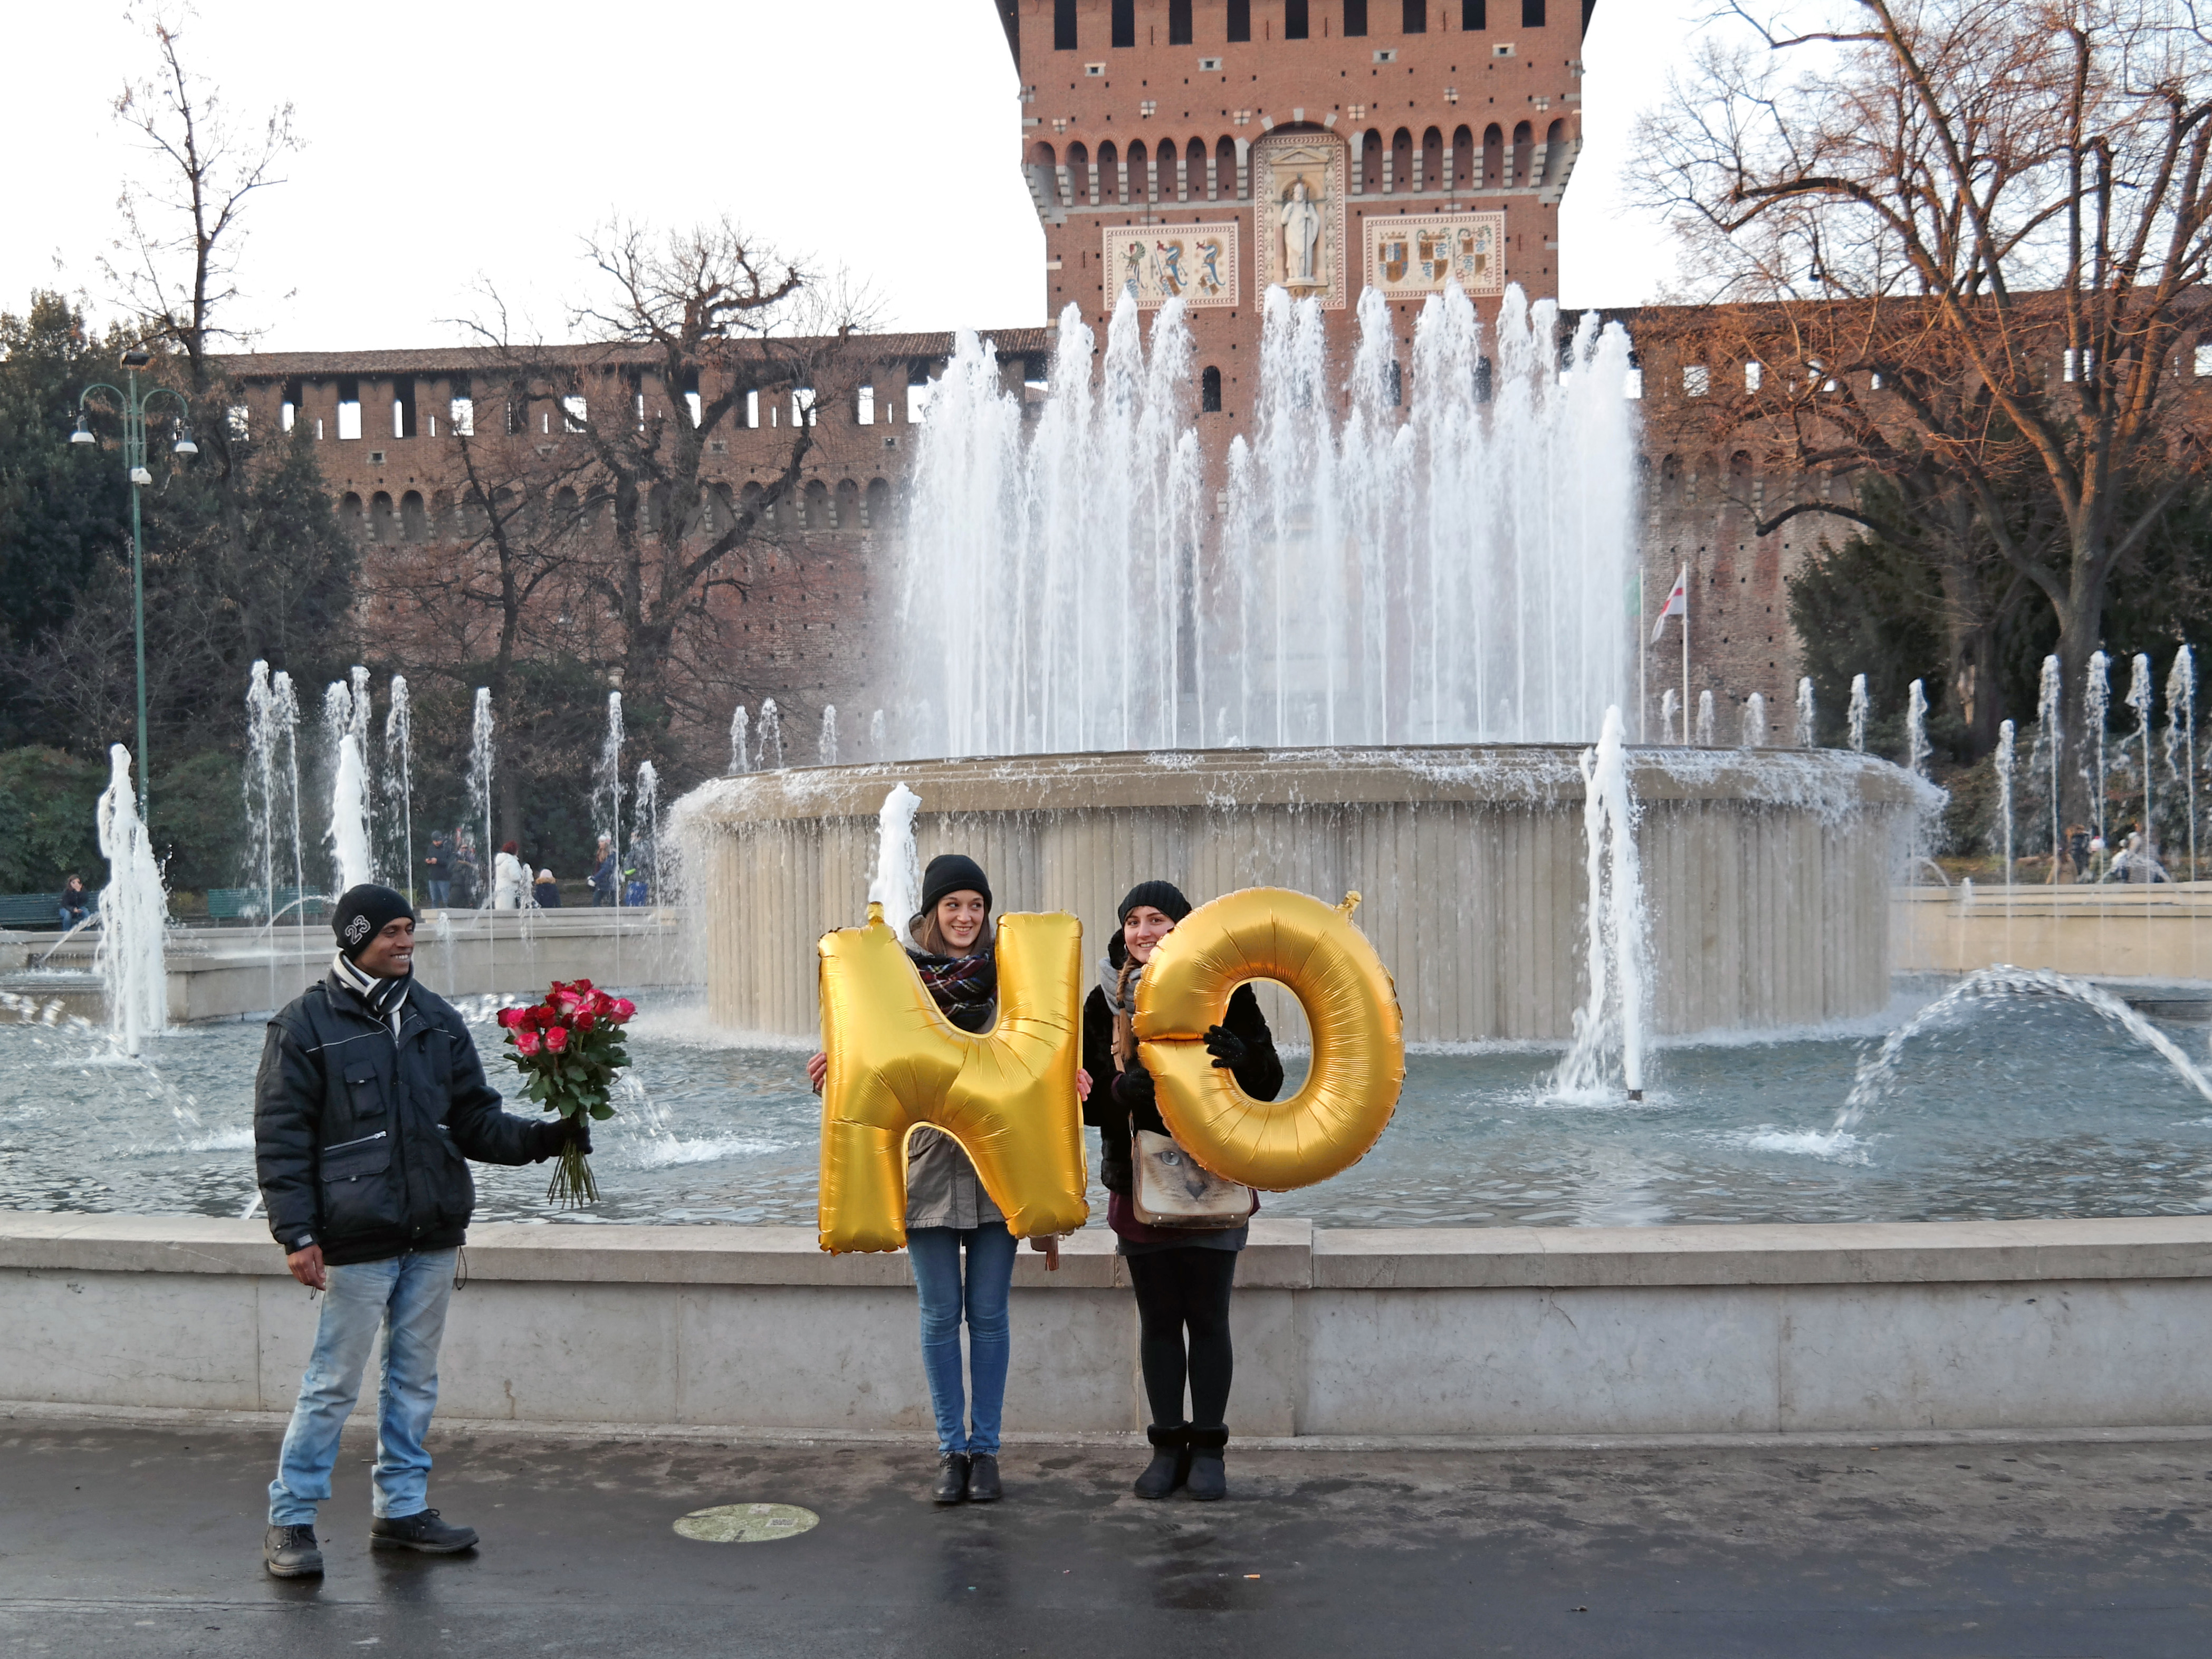 Italy, Milano, Castello Sforzesco - No, Silence was Golden, gold balloons